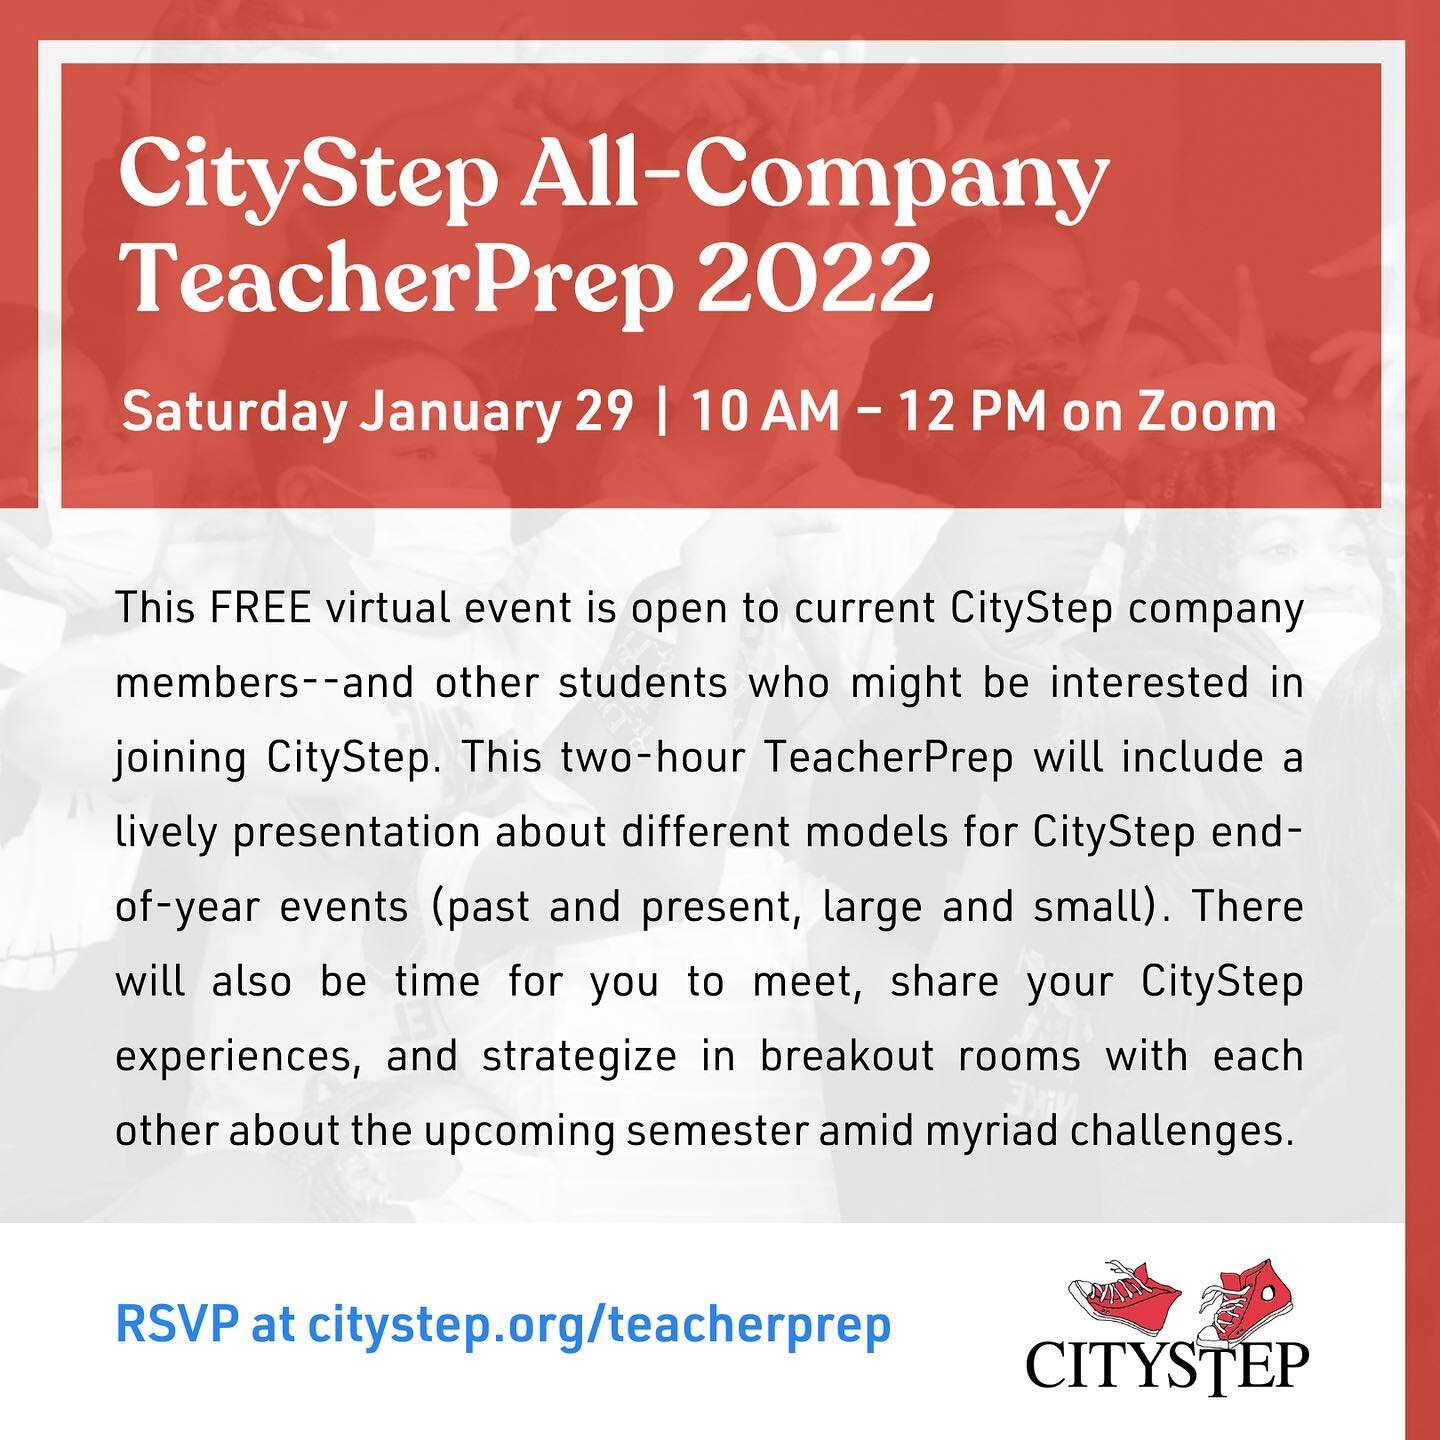 RSVP at citystep.org/teacherprep